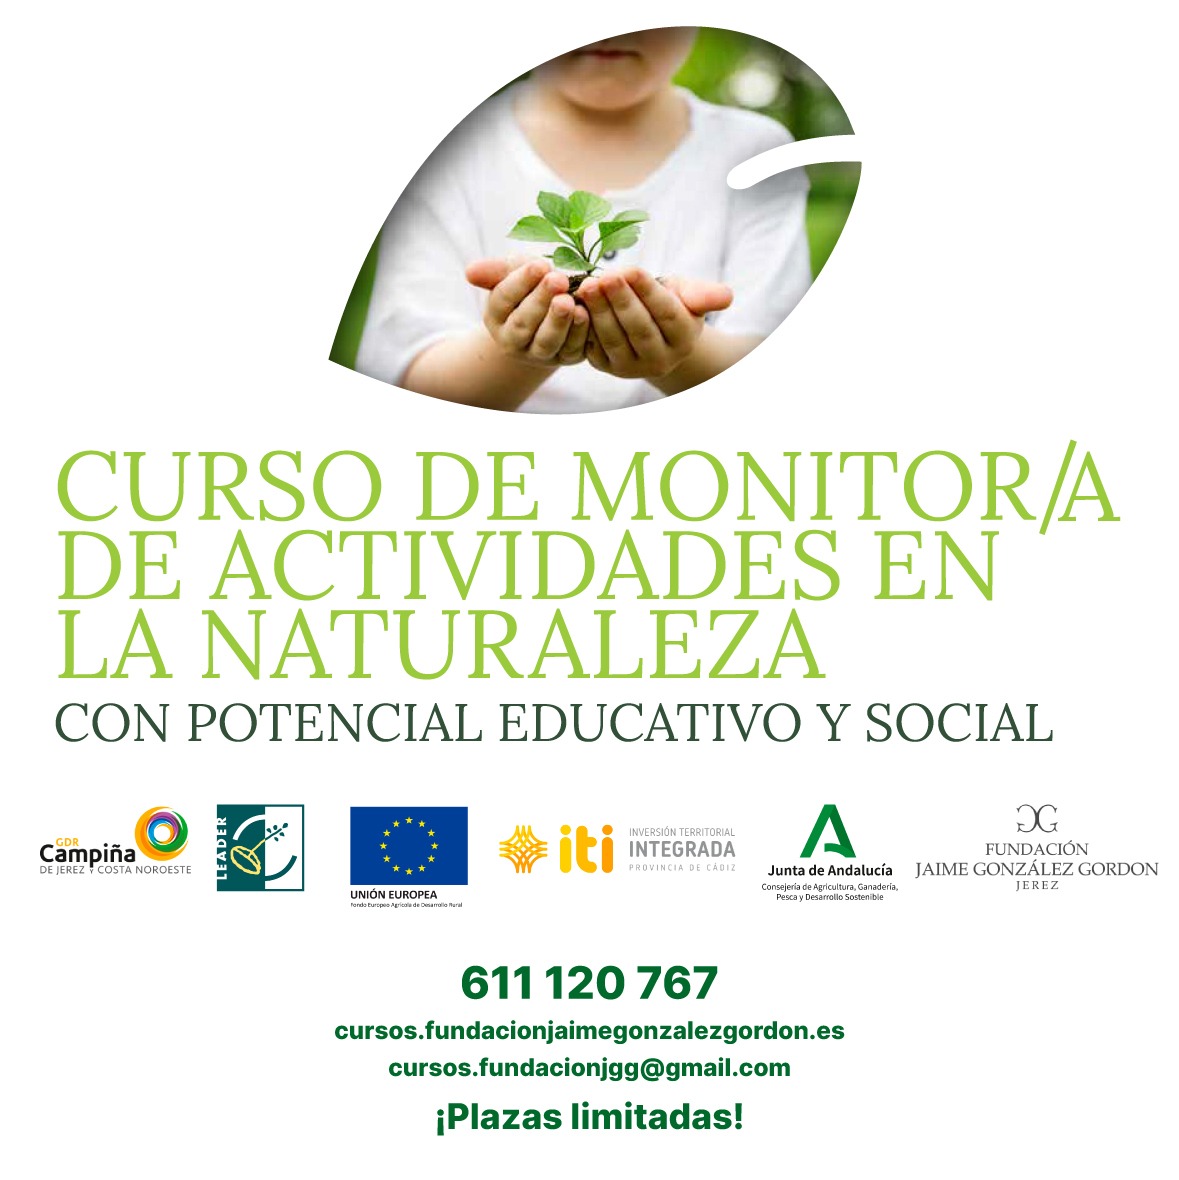 CURSO GRATUITO PARA JOVENES ZONA RURAL – MONITOR/A DE ACTIVIDADES EN LA NATURALEZA CON POTENCIAL EDUCATIVO Y SOCIAL